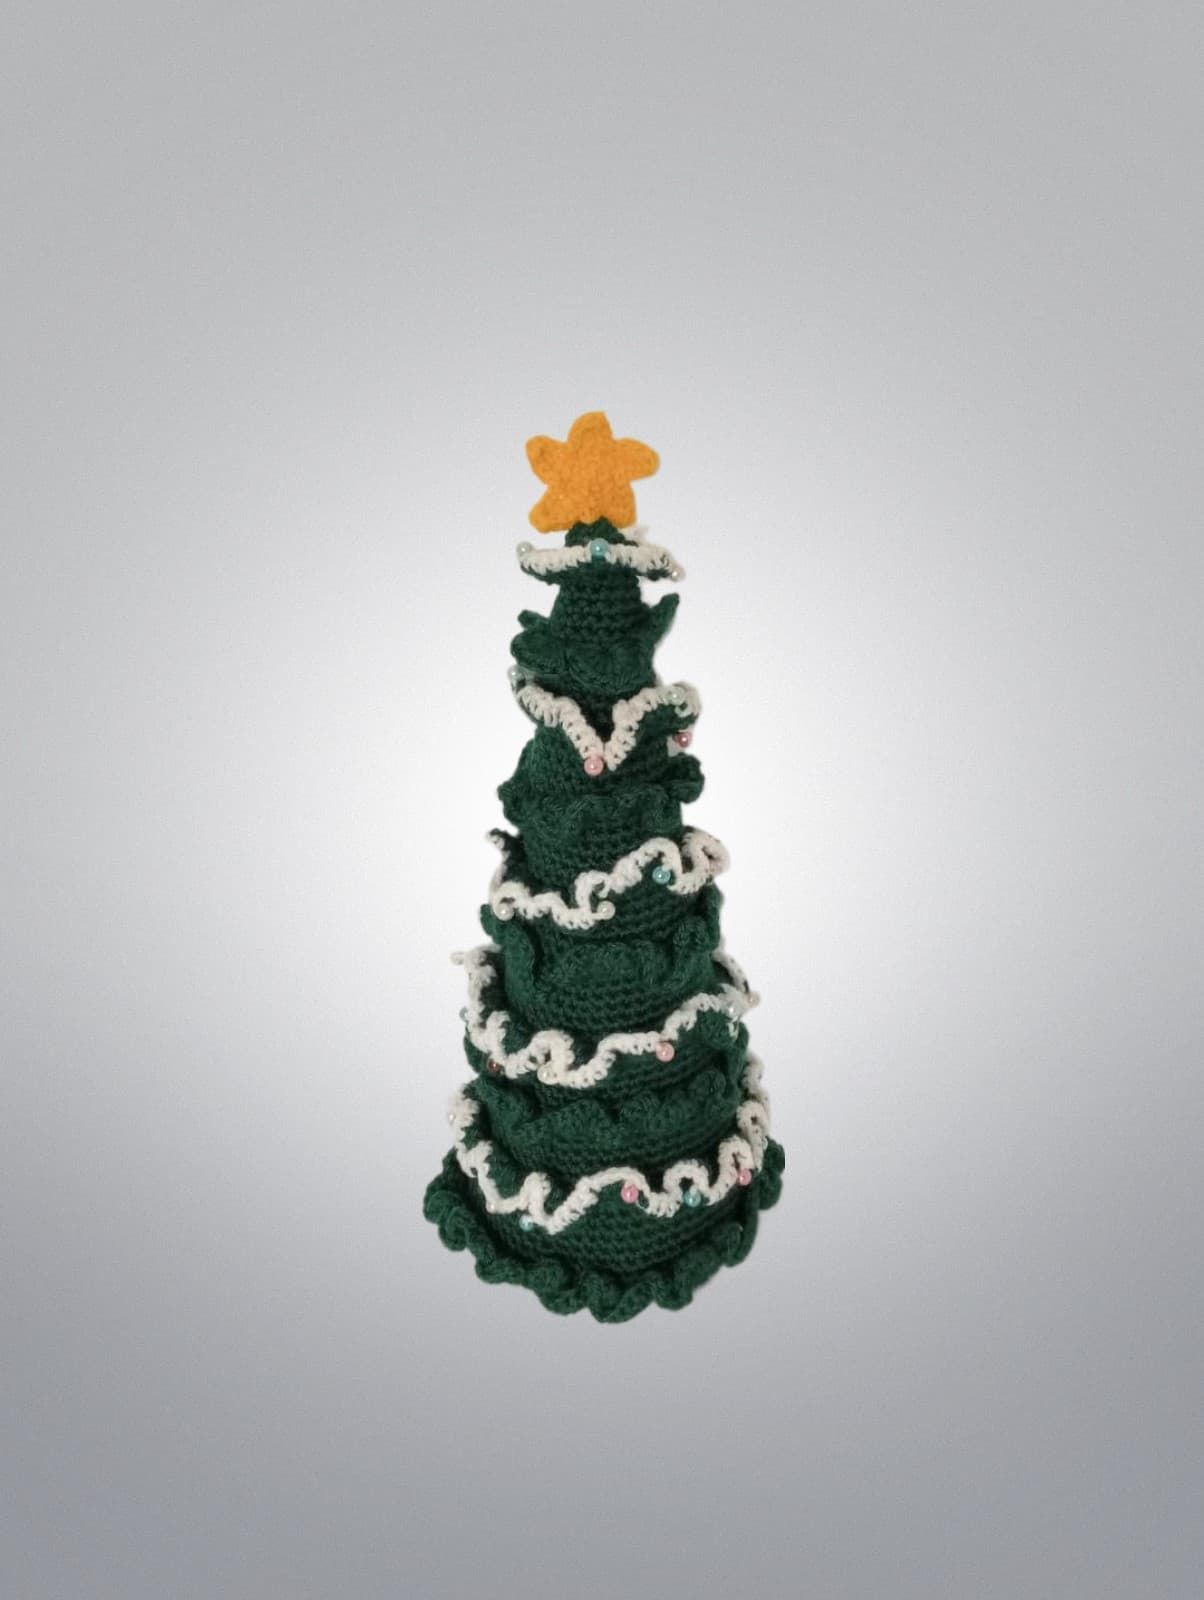 Peluche árbol navidad hecho a mano a ganchillo (amigurumi). - Imagen 1